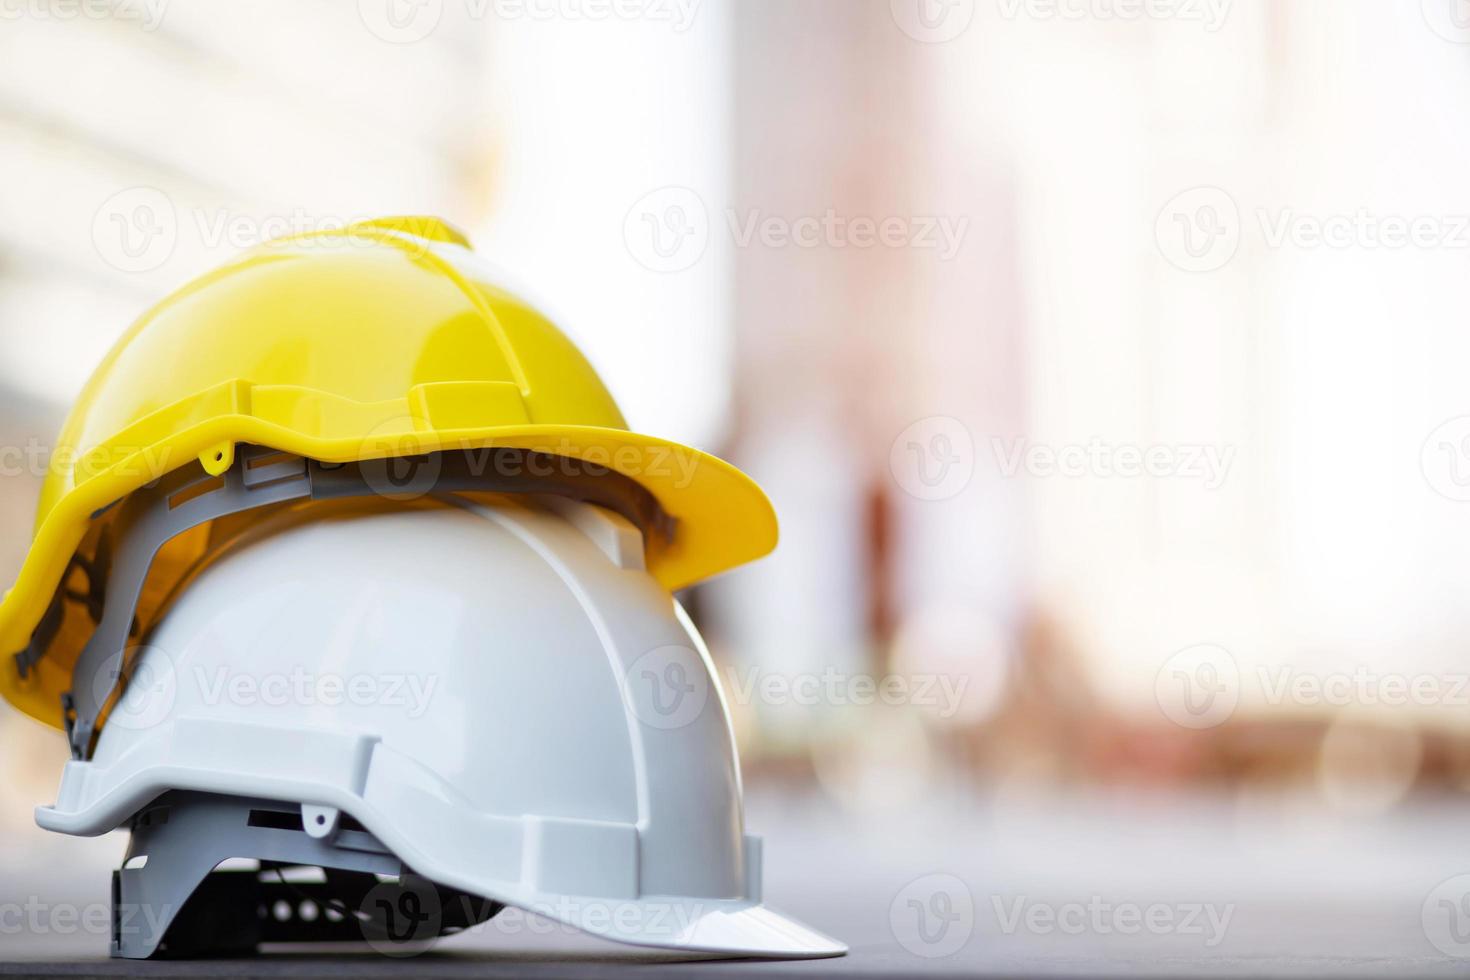 gele en witte harde veiligheidshelm in het project op de bouwplaats op betonnen vloer in de stad met zonlicht. helm voor werkman als ingenieur of arbeider. conceptveiligheid voorop. foto